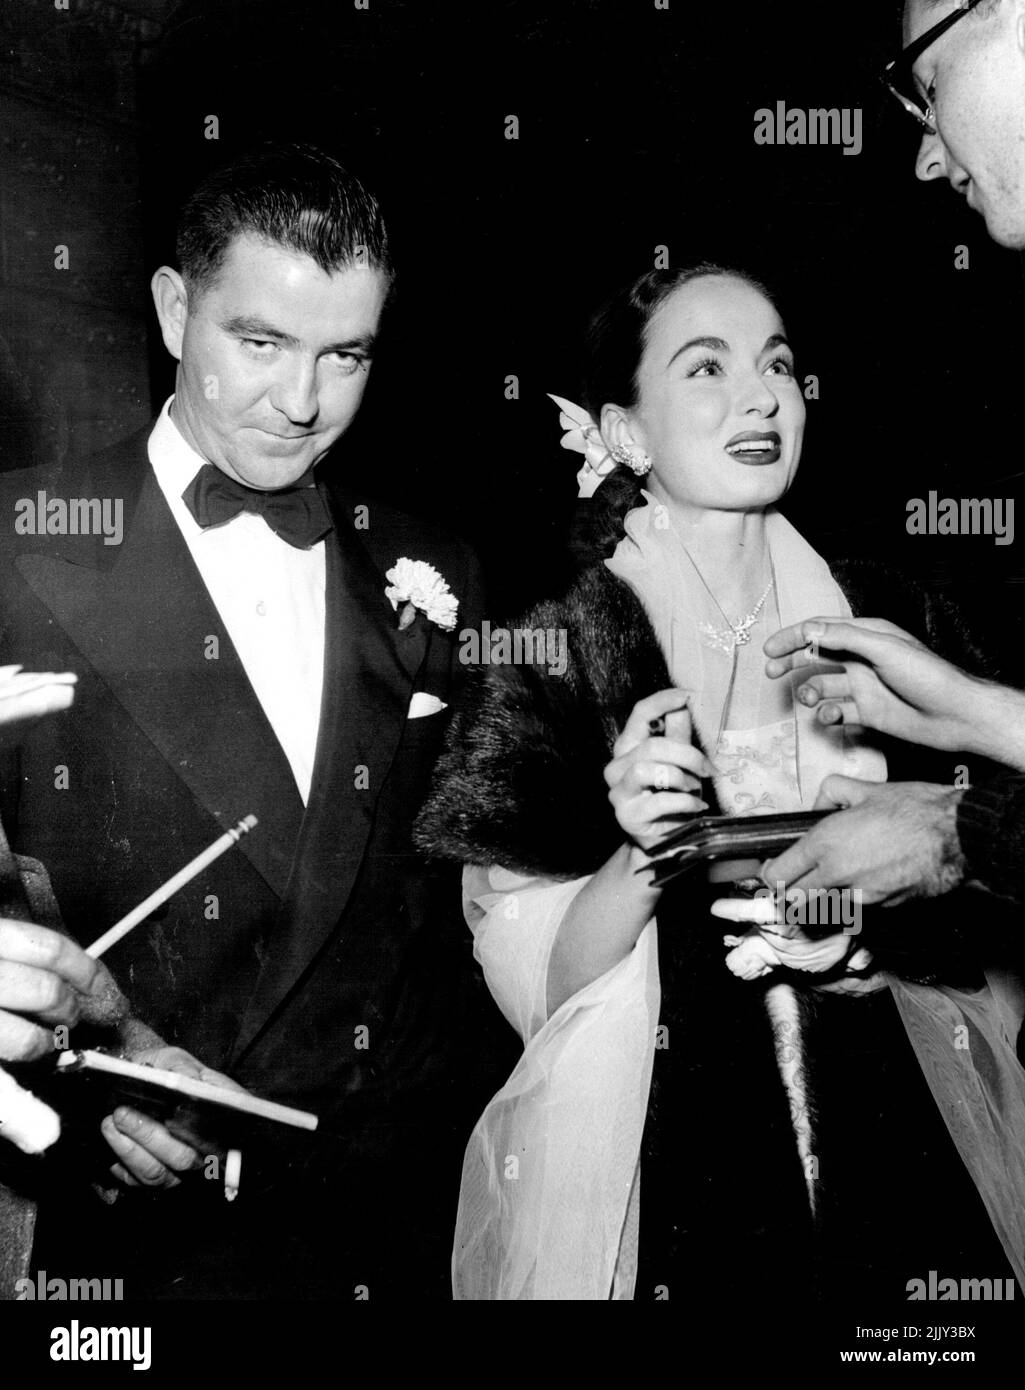 Ann Blyth besucht eine Premiere mit dem neuen Verlobten Dr. James McNulty. Ann Blyth und ihr Mann Dr. James McNulty, Geburtshelferin von Los Angeles und Bruder von Dennis Day, dem bekannten Sänger, bei einer Hollywood-Premiere. 19. Juli 1953. Stockfoto